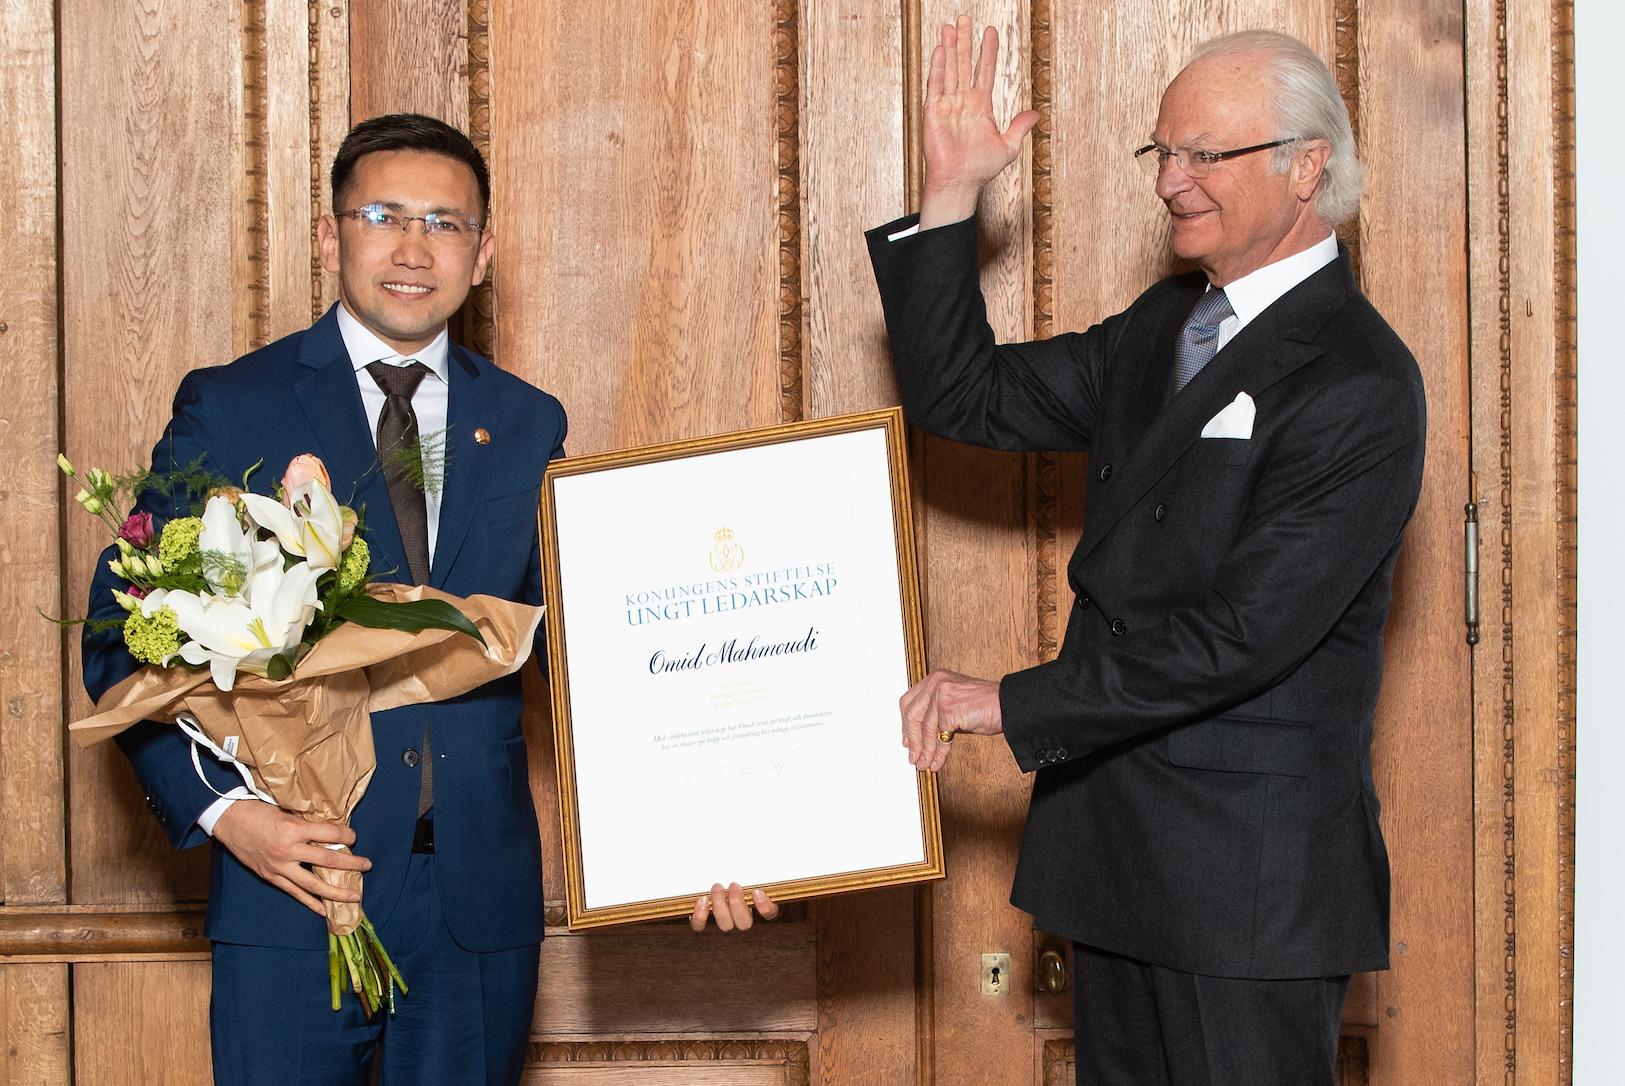 Omid Mahmoudi fick ta emot den prestigefulla Kompassrosen av Carl XIV Gustaf på Kungliga slottet.